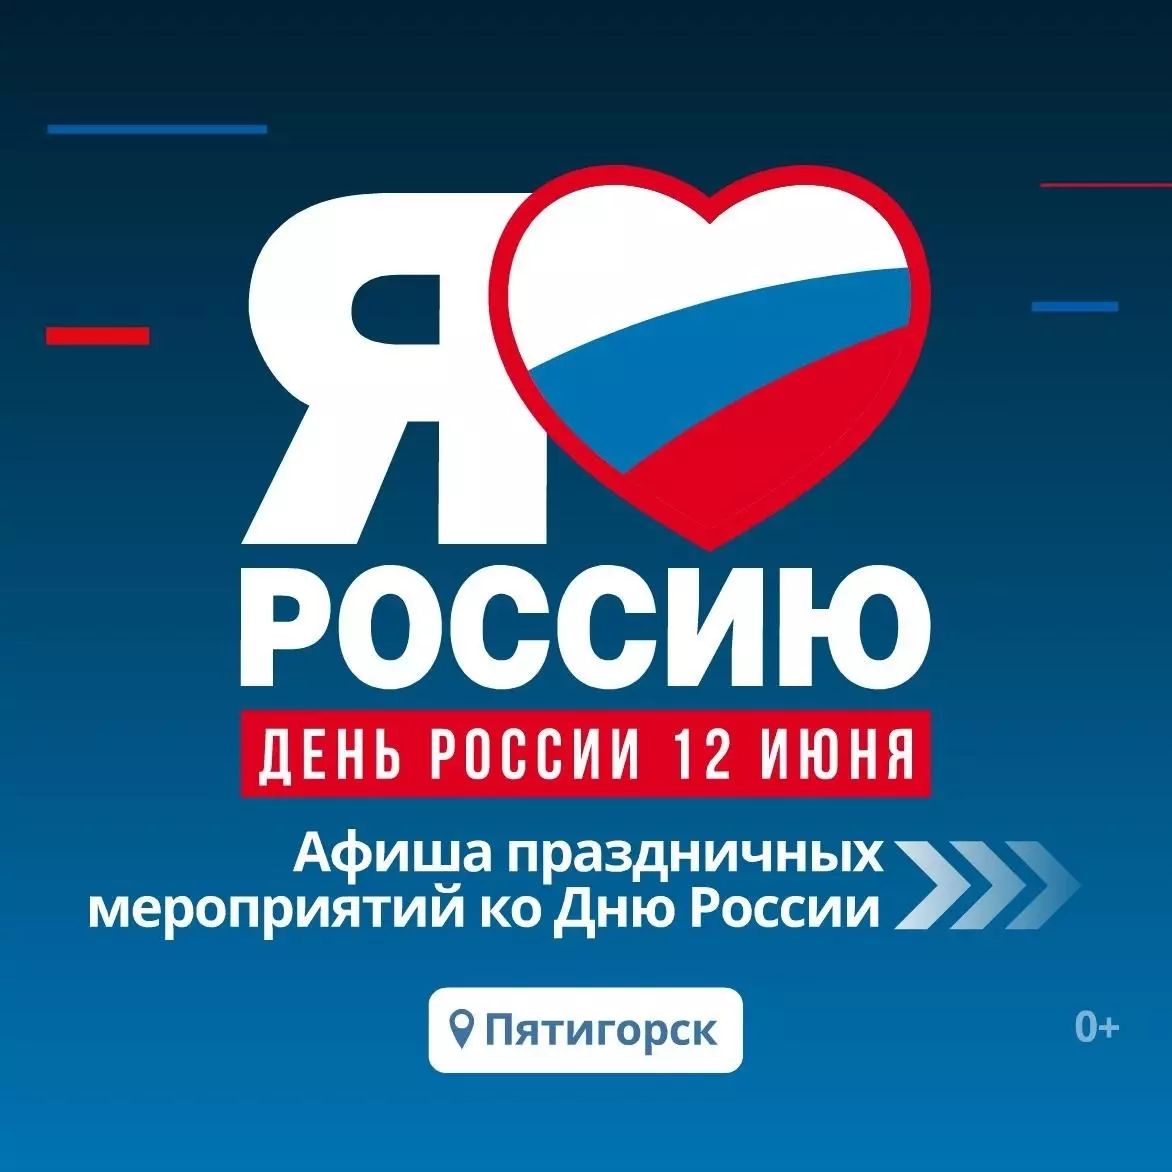 Программу мероприятий составили в Пятигорске на День России